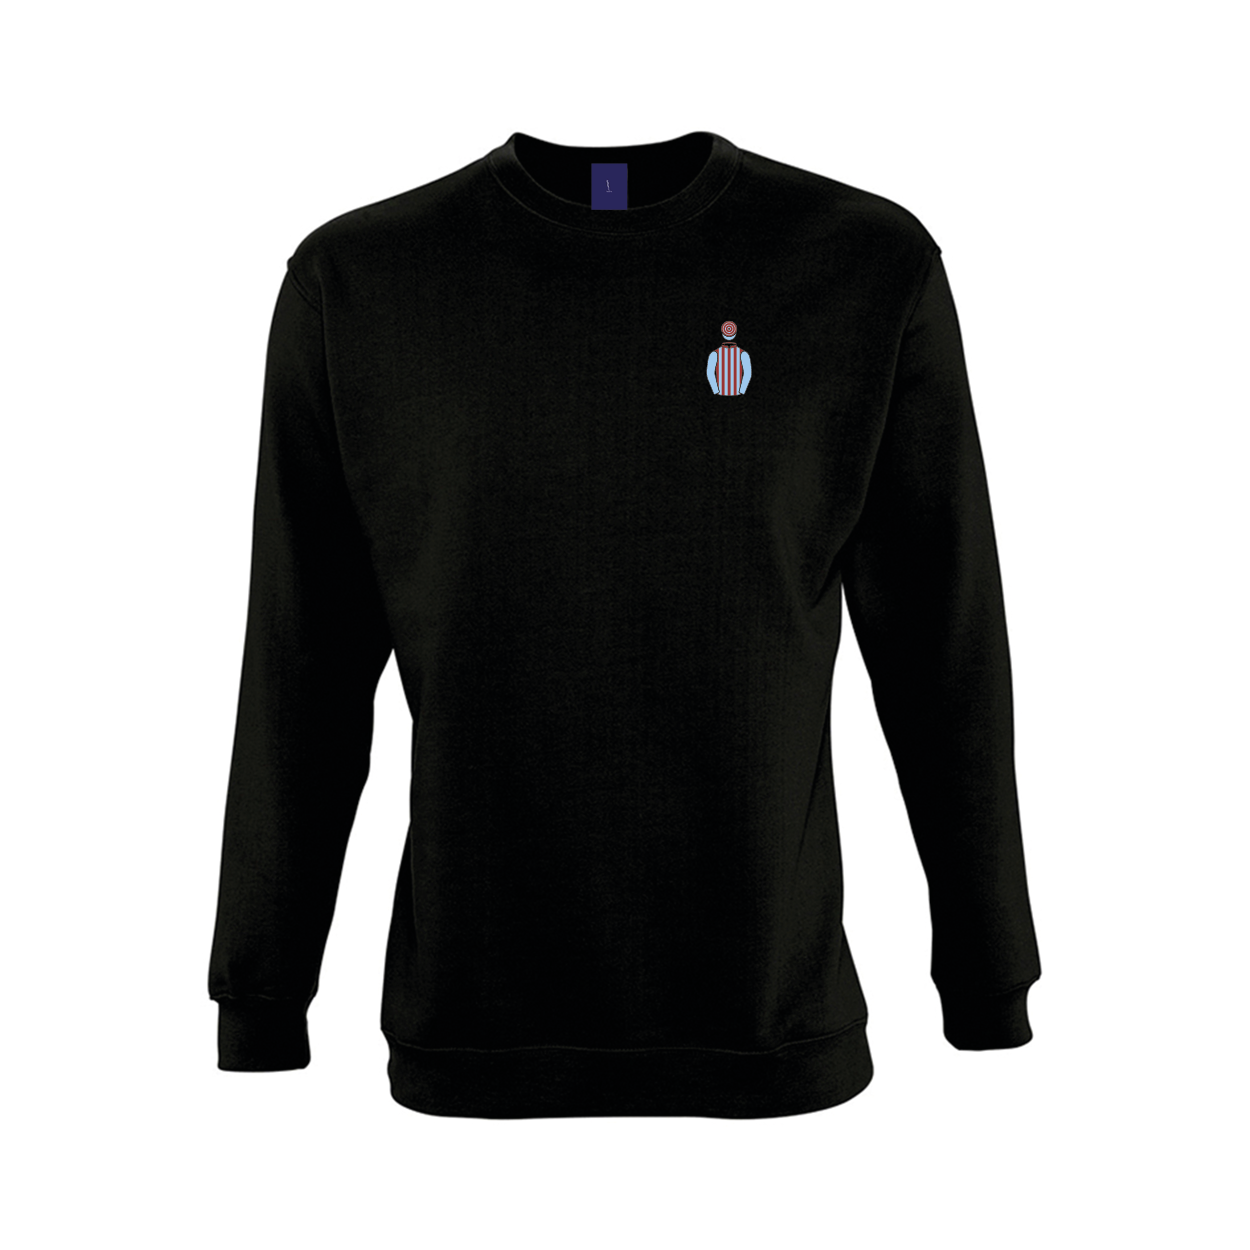 Unisex Jim Lewis Embroidered Sweatshirt - Clothing - Hacked Up